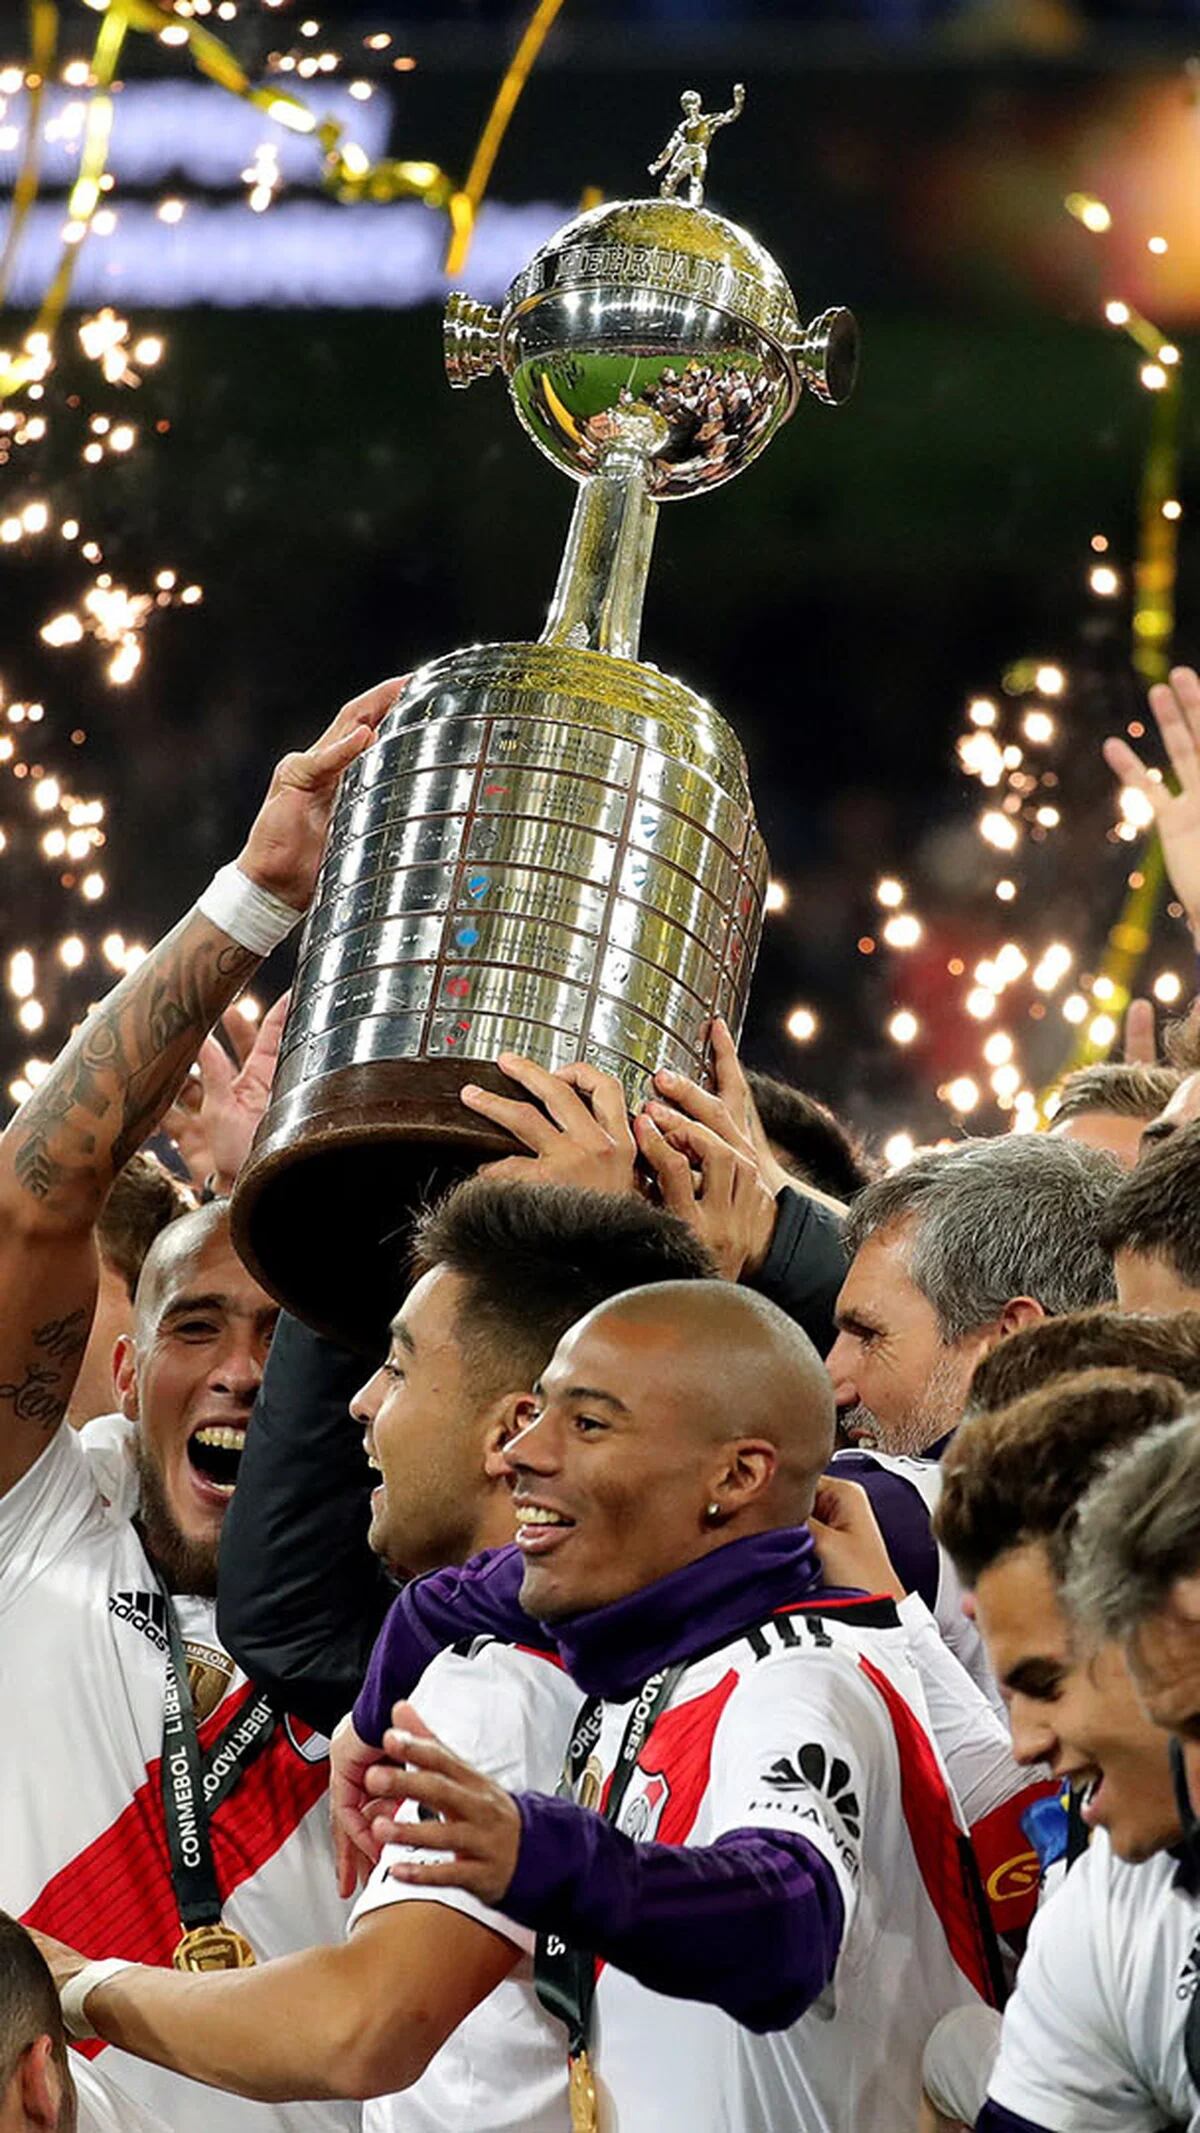 FIFA 18: la Copa CSVP Libertadores y Sudamericana ya definieron